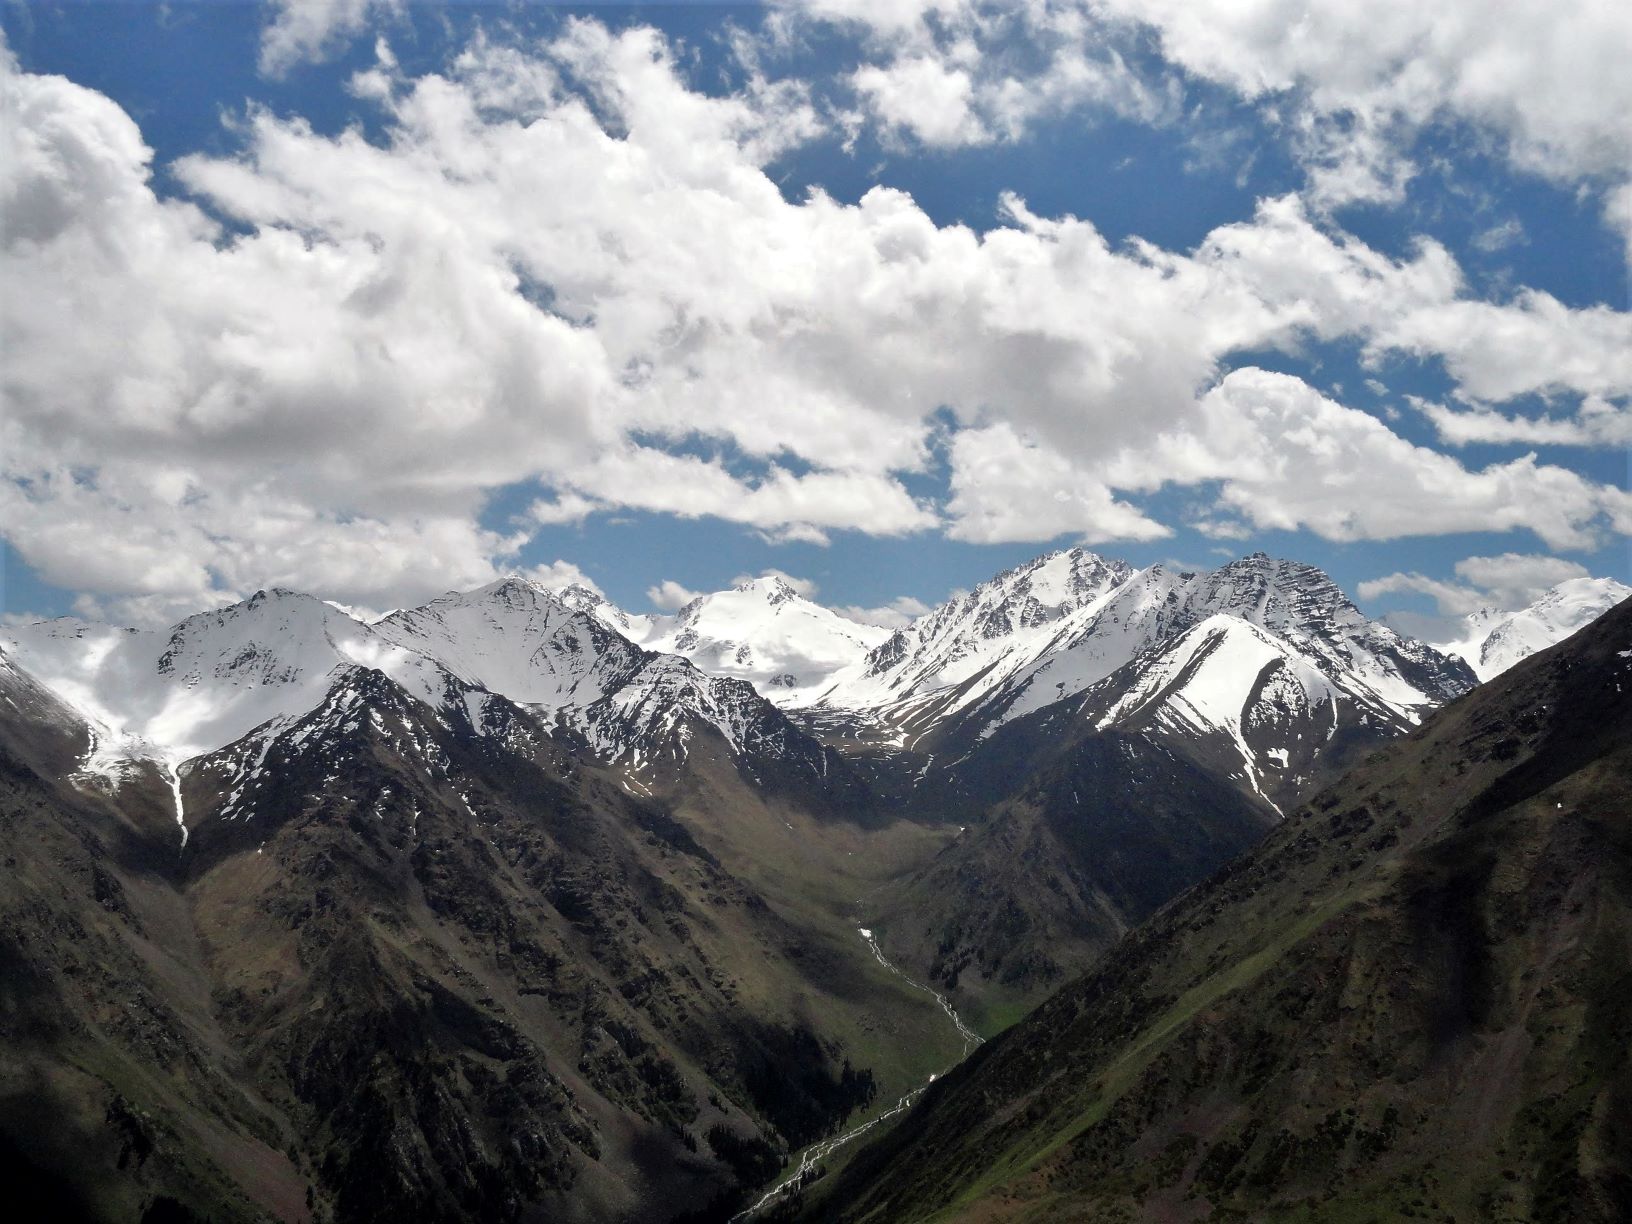 Kyrgyzstan Mountains at shamshy